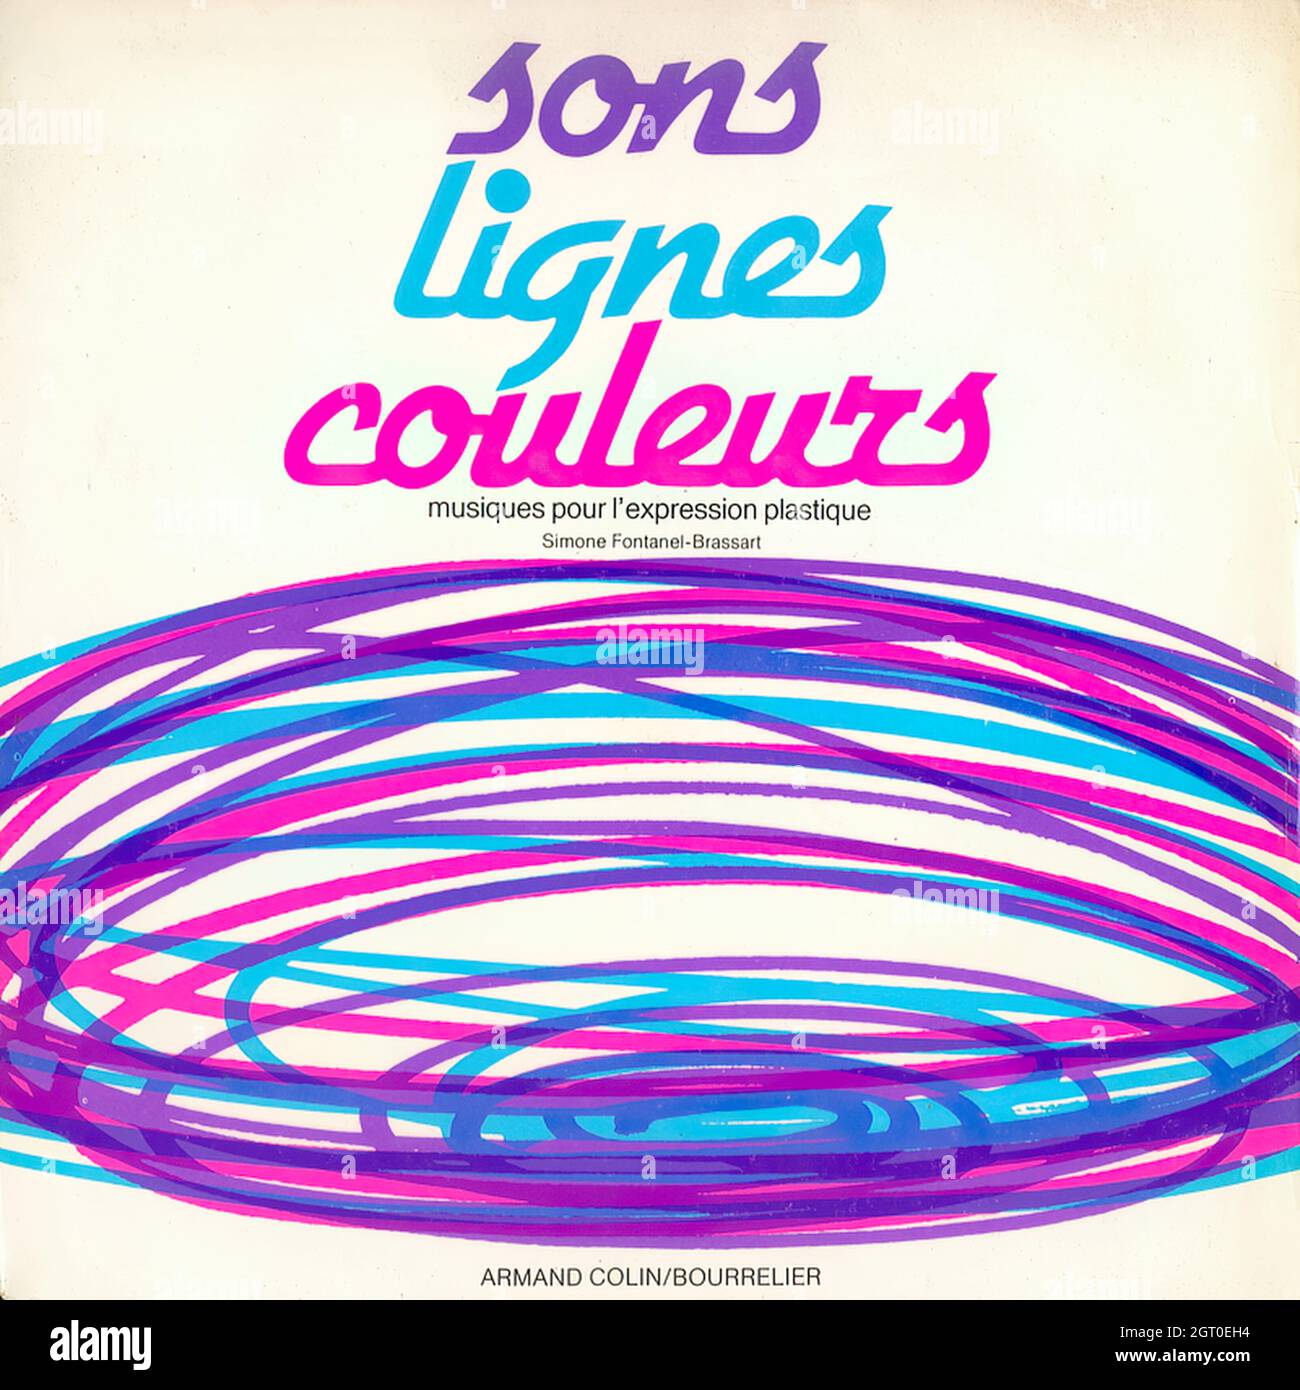 Sons lignes couleurs, musiques pour l'expression plastique - Vintage Vinyl Record Cover Stock Photo